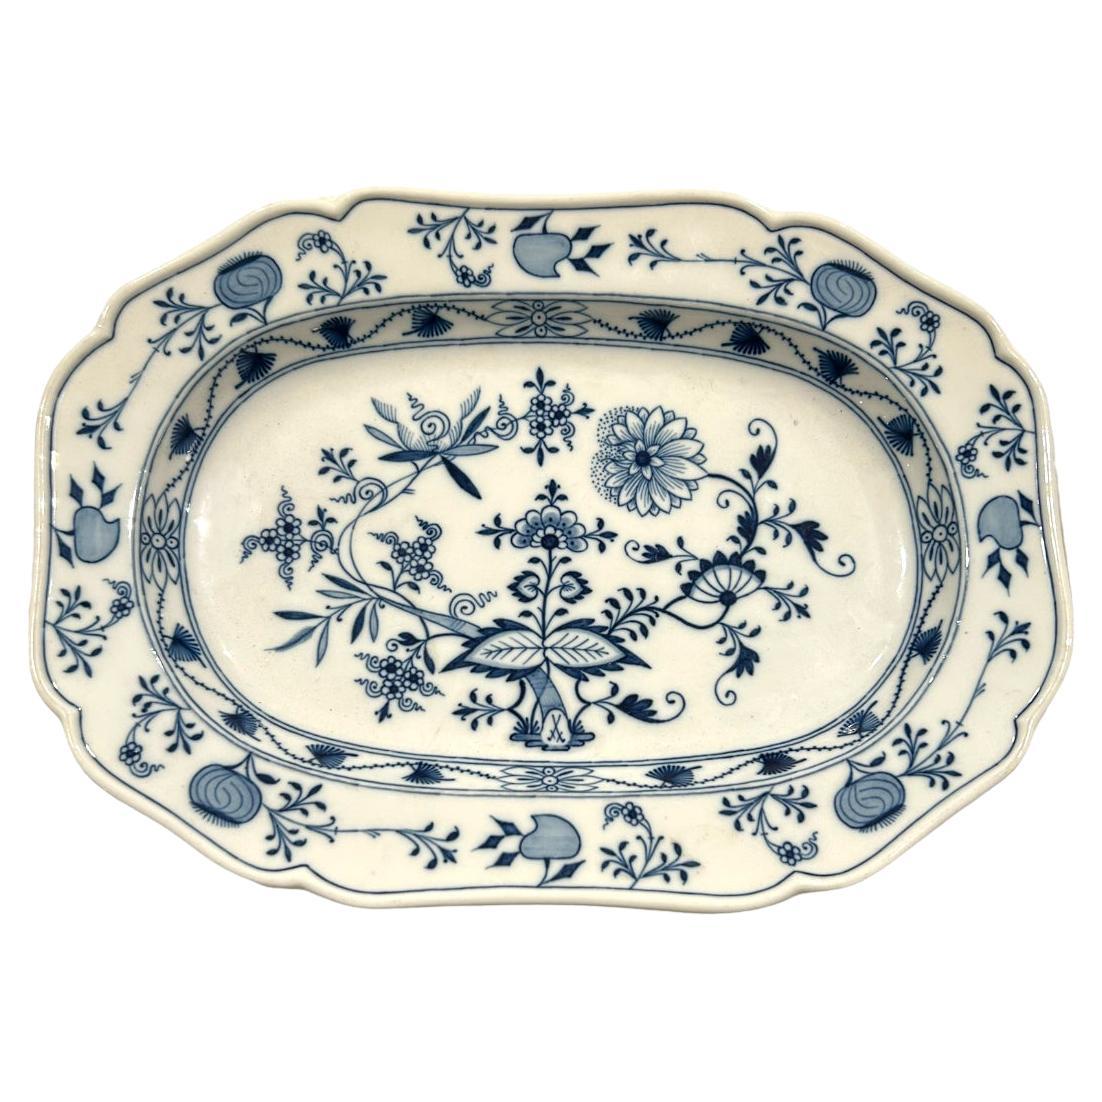 Grand plateau vintage de Meissen en porcelaine bleue peinte à la main ~ 13,5